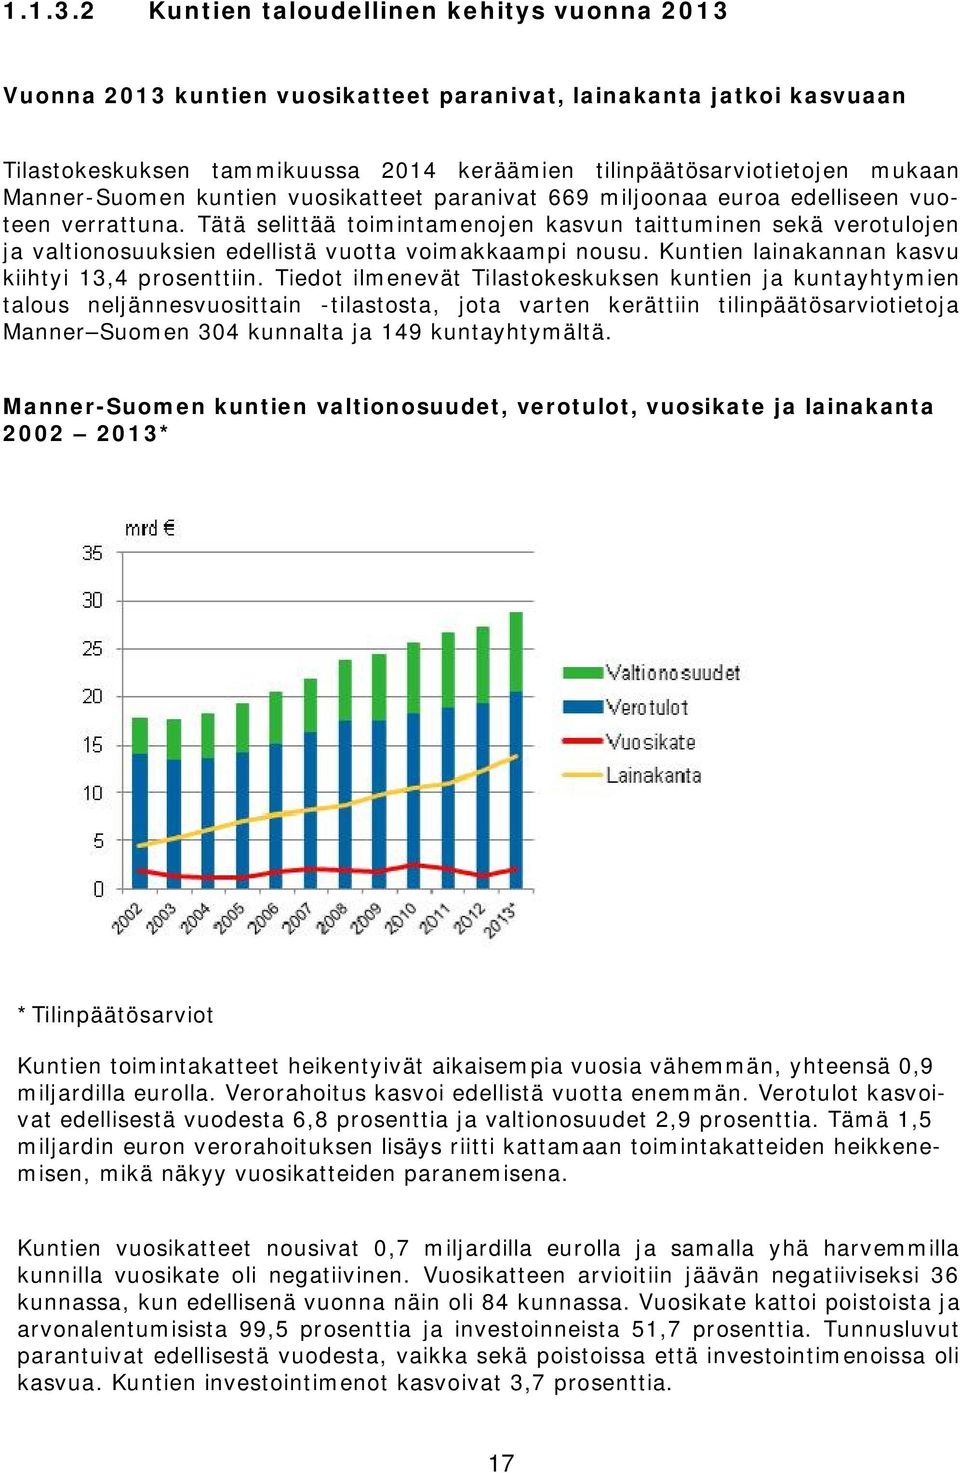 Manner-Suomen kuntien vuosikatteet paranivat 669 miljoonaa euroa edelliseen vuoteen verrattuna.